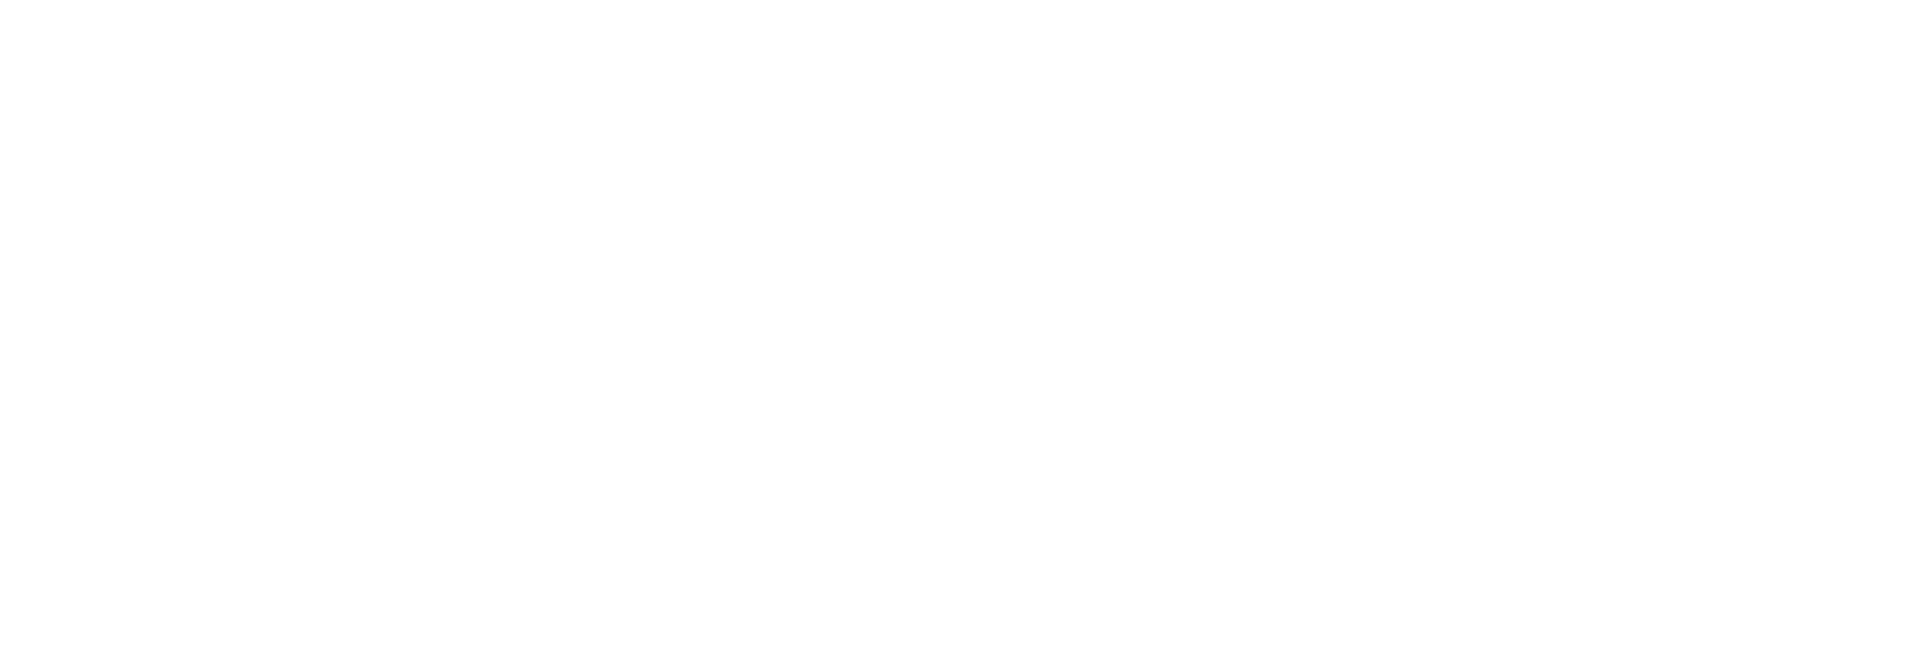 Karcher GmbH Logo